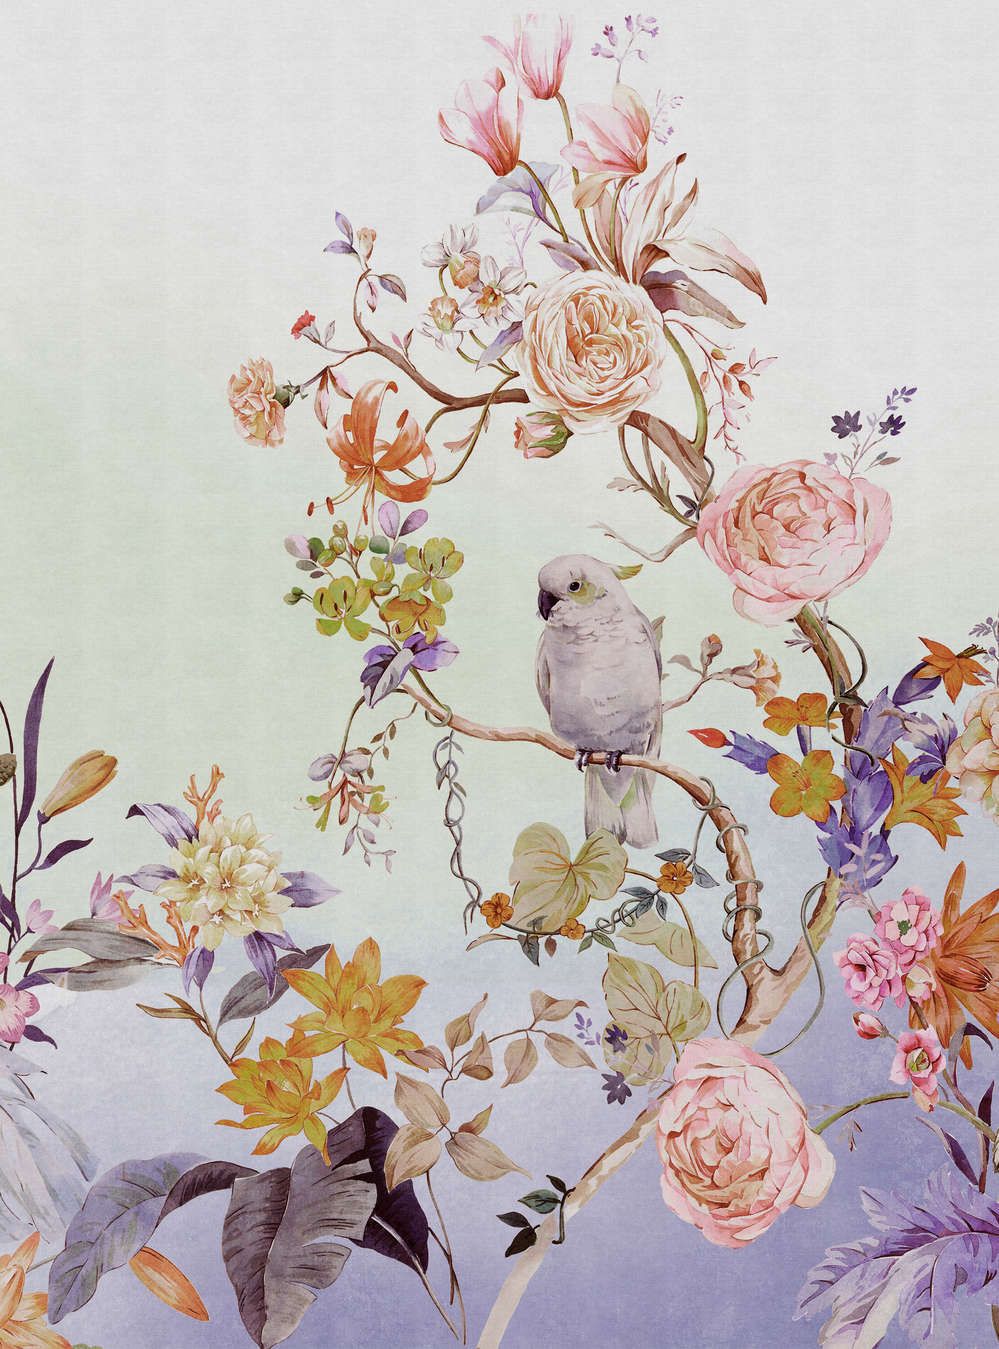             Fotomural »paradise« - Pájaro y flores con degradado de colores y estructura de lino en el fondo - Coloreado | Material sin tejer mate, liso
        